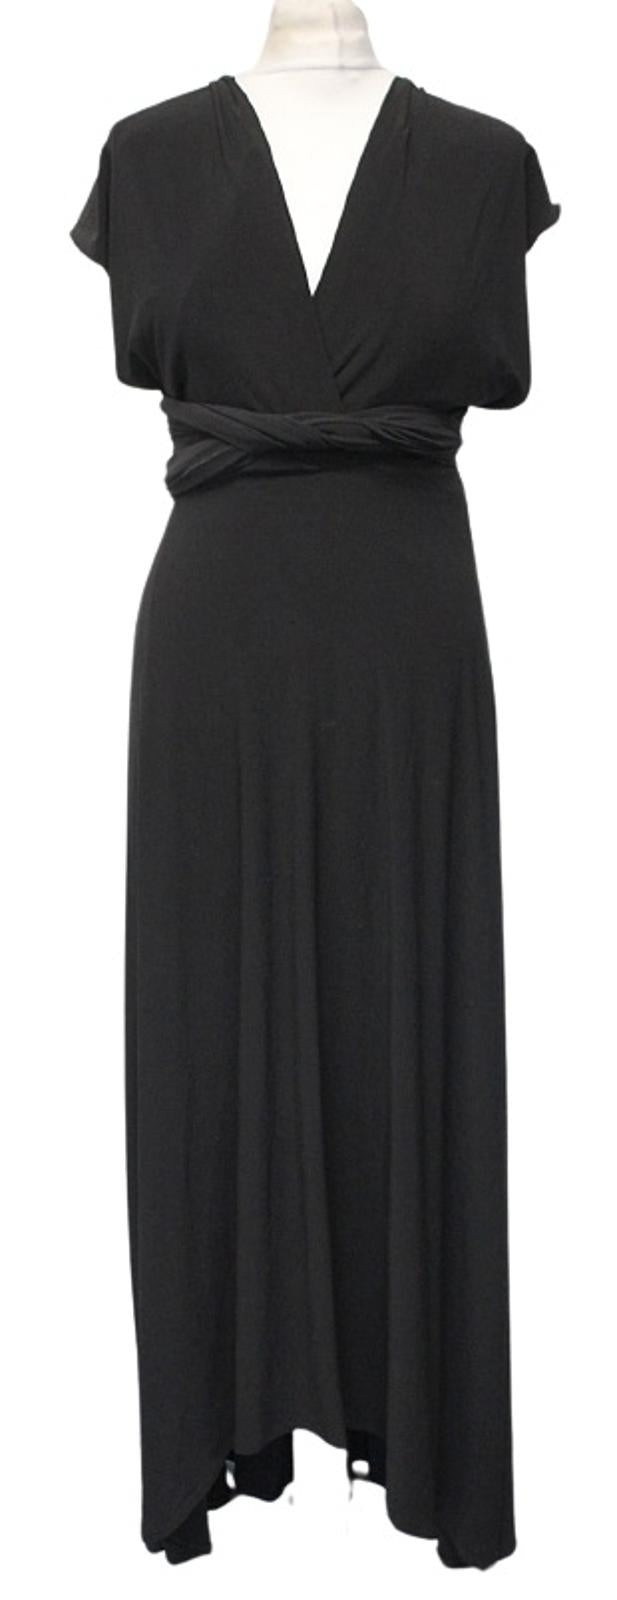 COAST Ladies 15 Ways Twist The Wrap Black Stretch Jersey Maxi Dress UK10 NEW